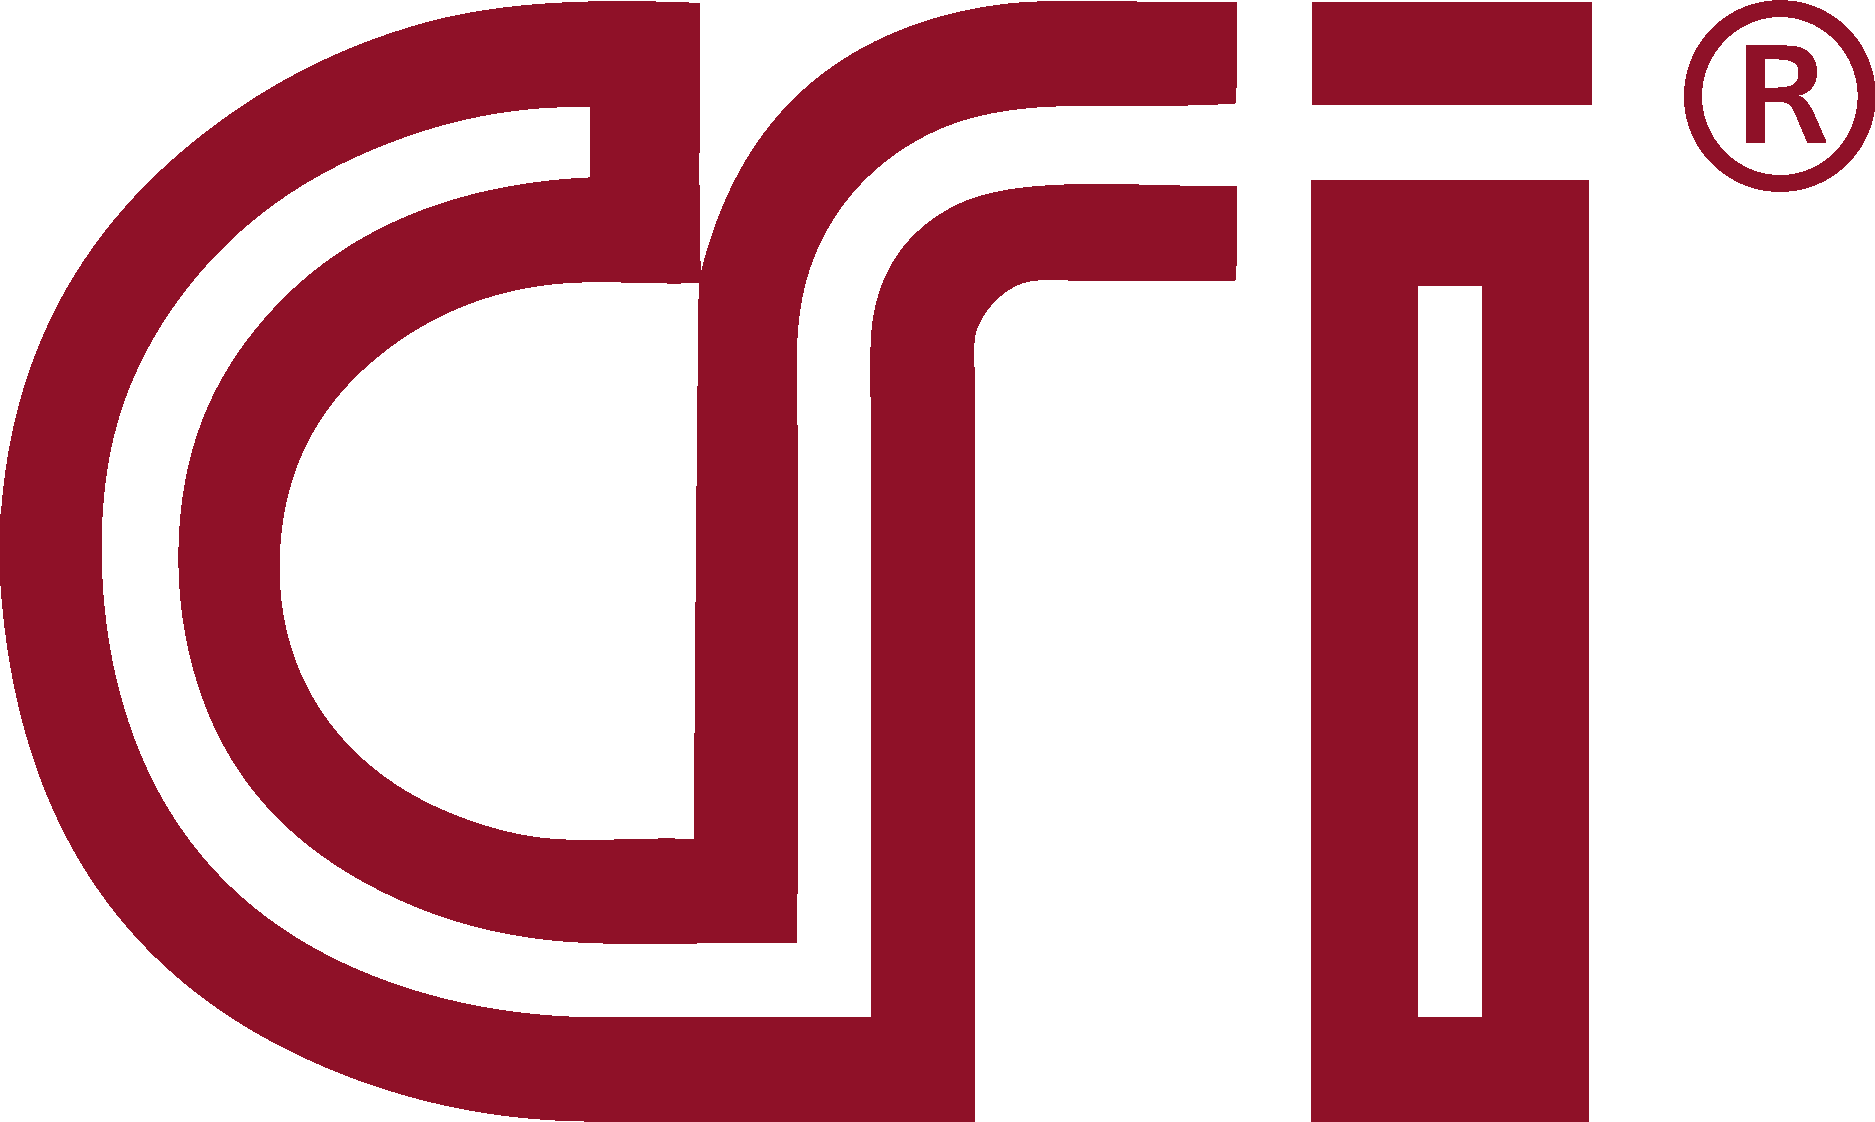 CRI Catheter Research, Inc. Logo Vector